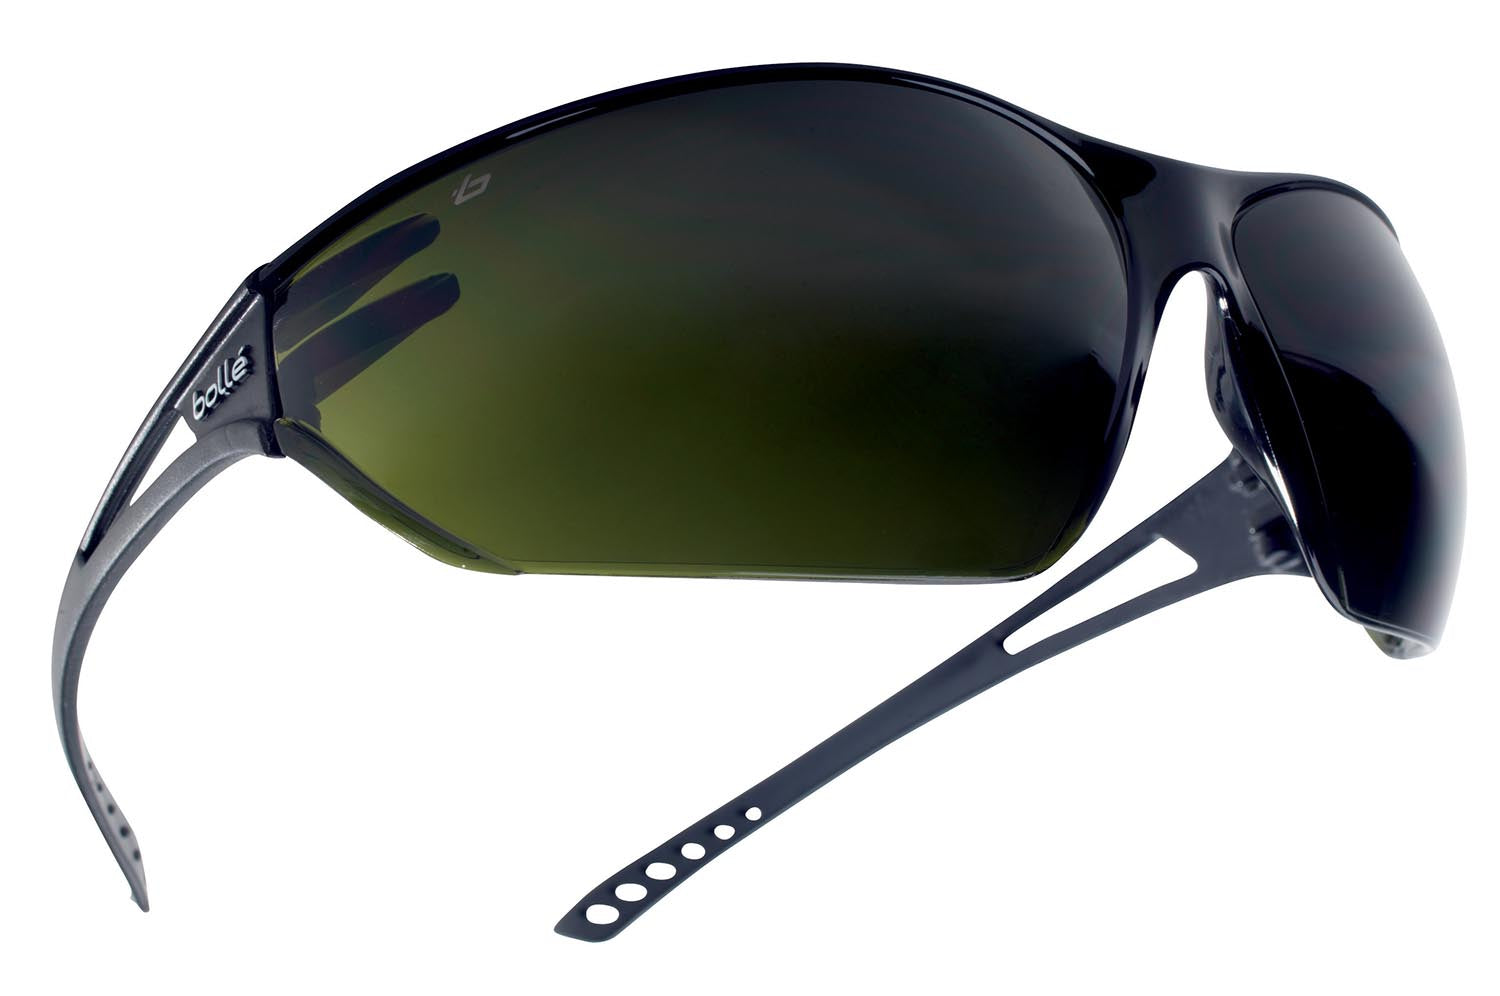 Bolle Rastreador II Gafas de Seguridad Gafas - Oscuras 5 Soldadura  TRACWPCC5